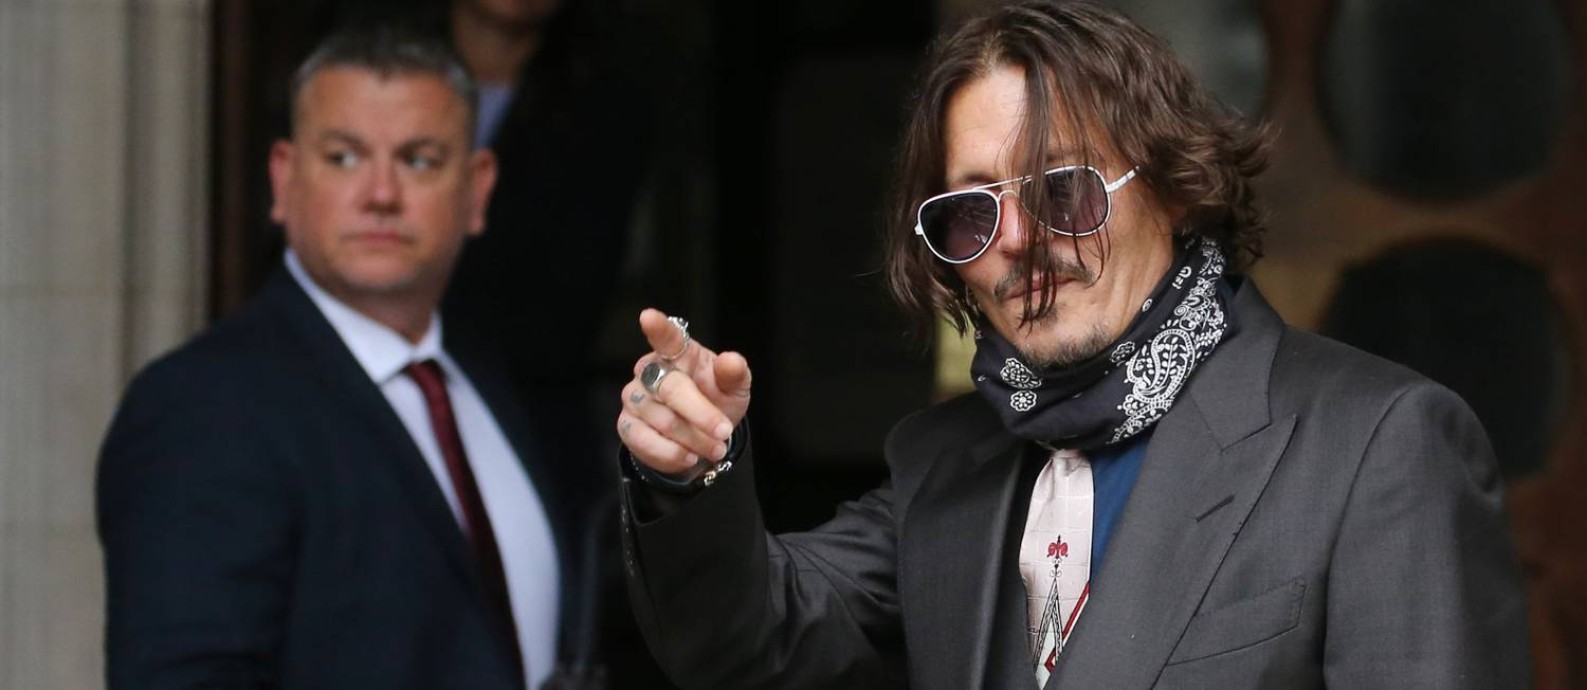 Johnny Depp na entrada do High Court, em Londres, no segundo dia de seu processo contra o 'The Sun' Foto: ISABEL INFANTES / AFP